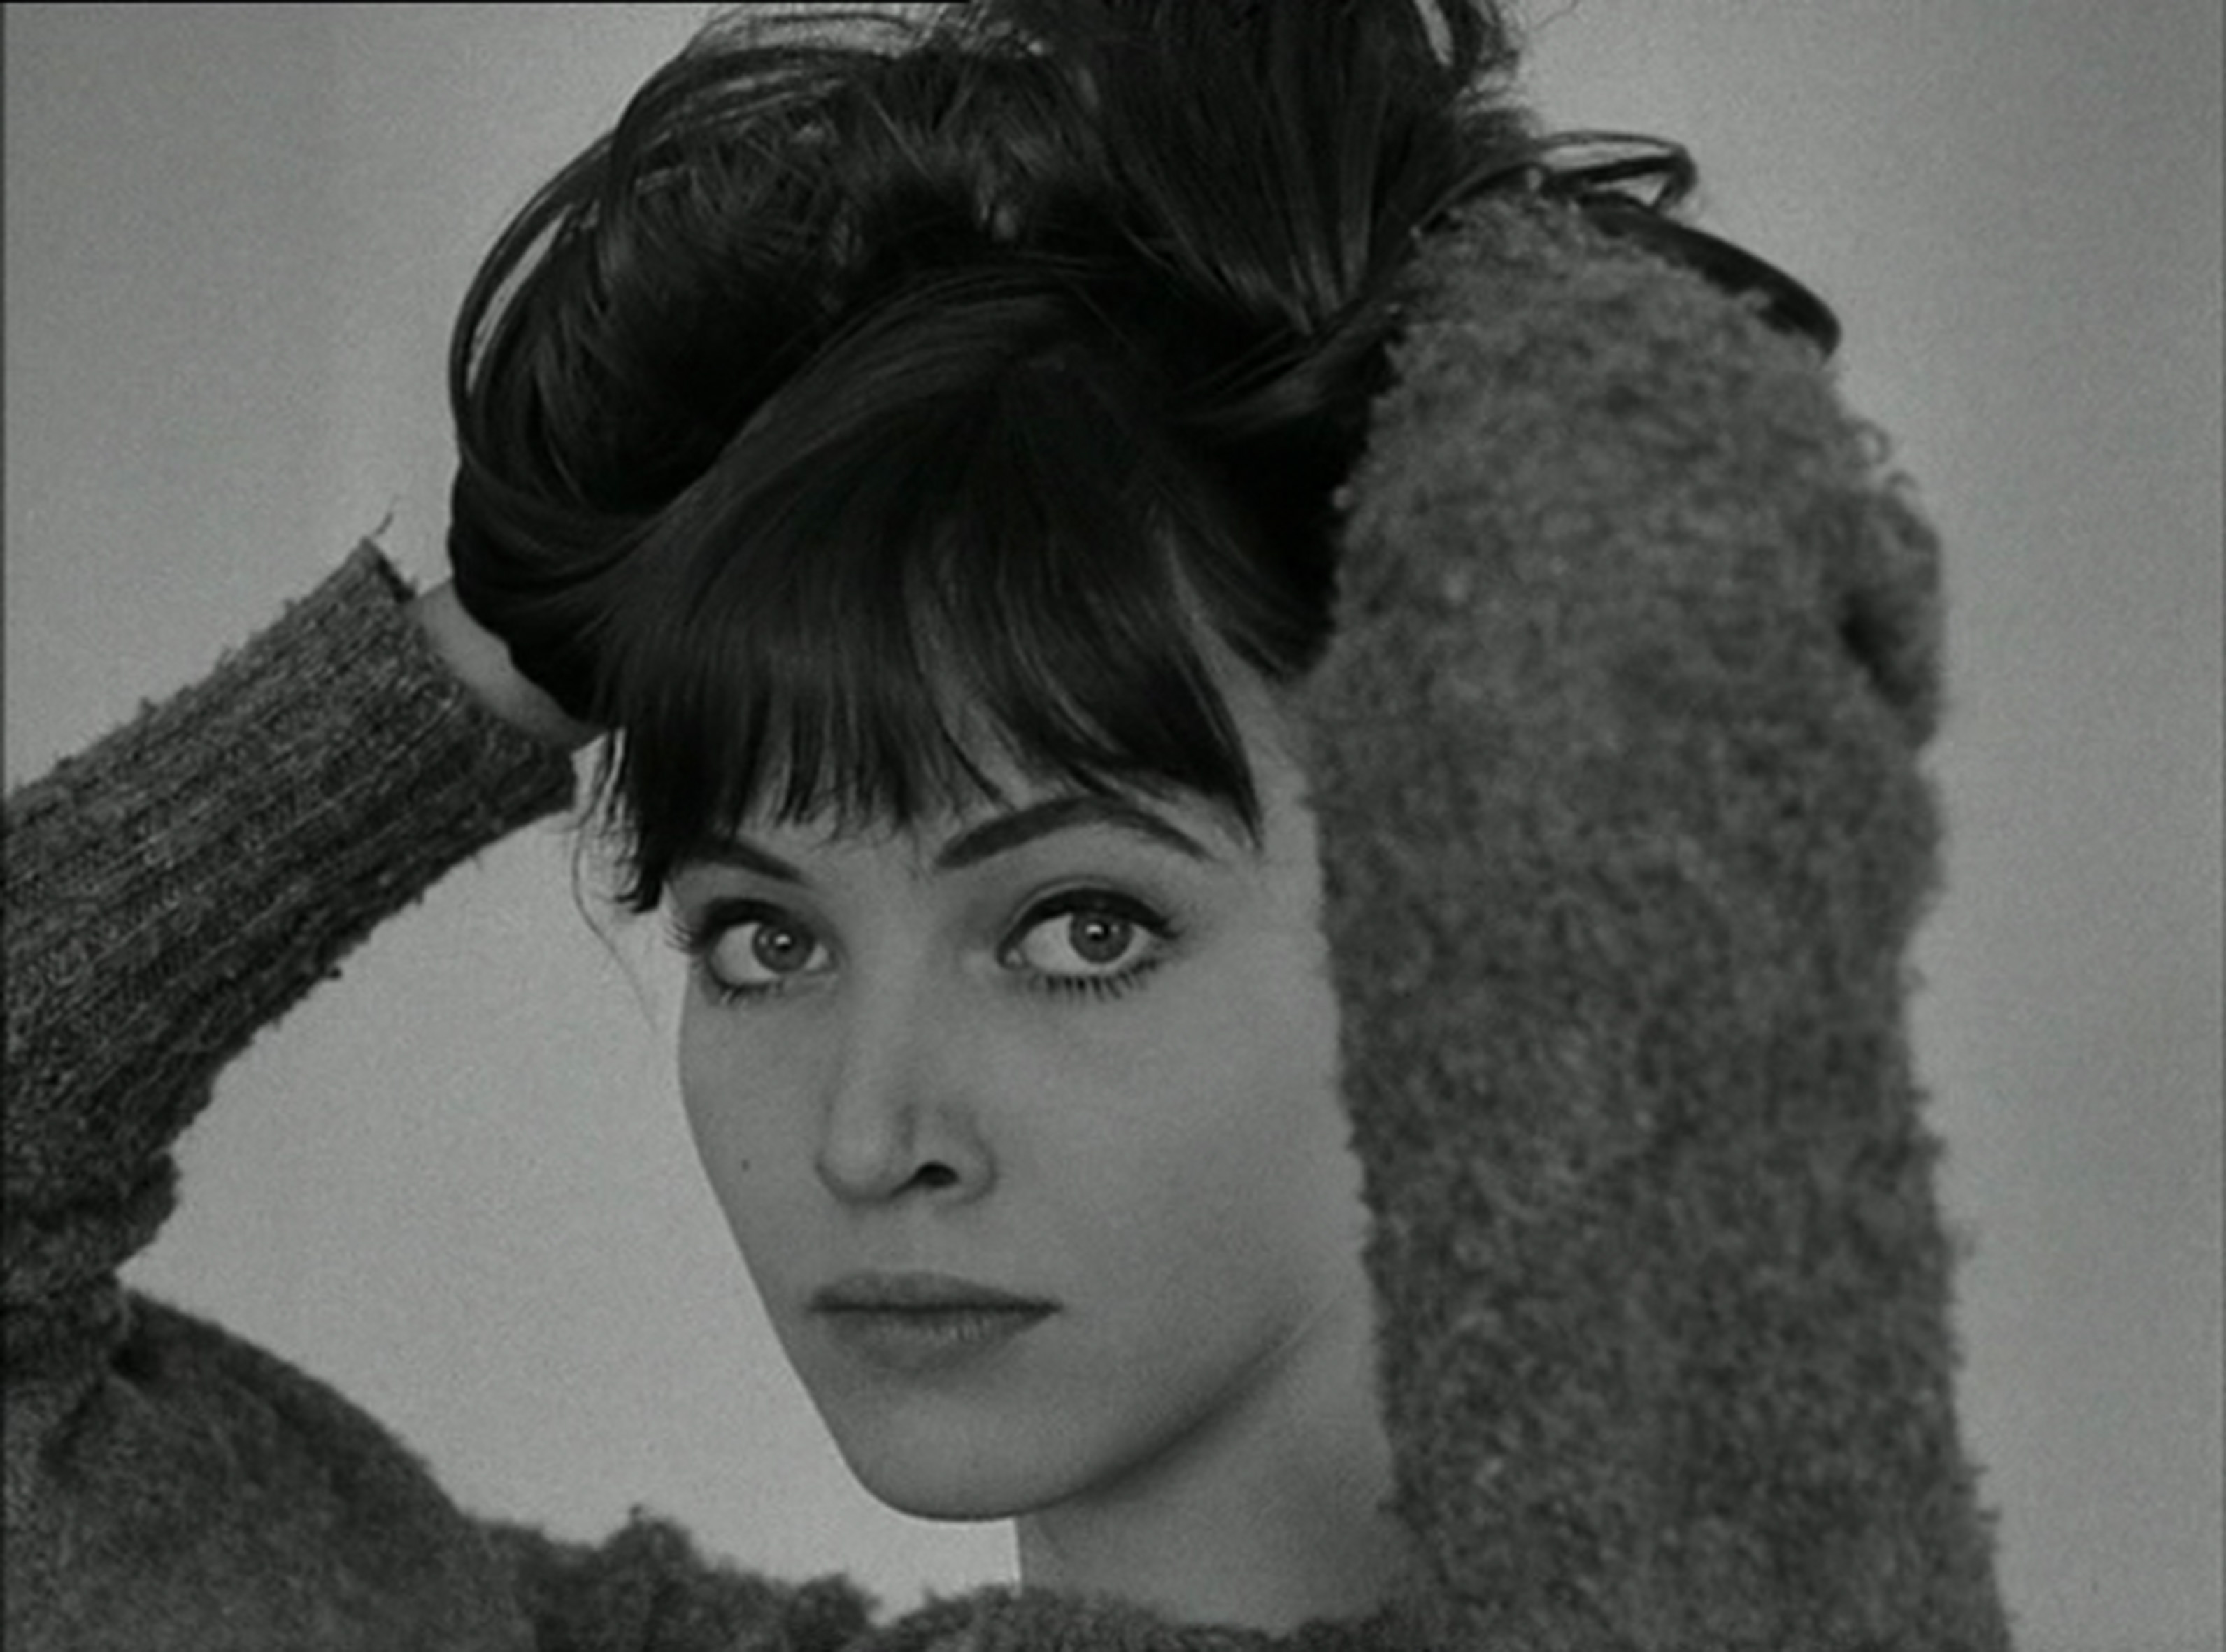 Still of Anna Karina in Le petit soldat (1963)